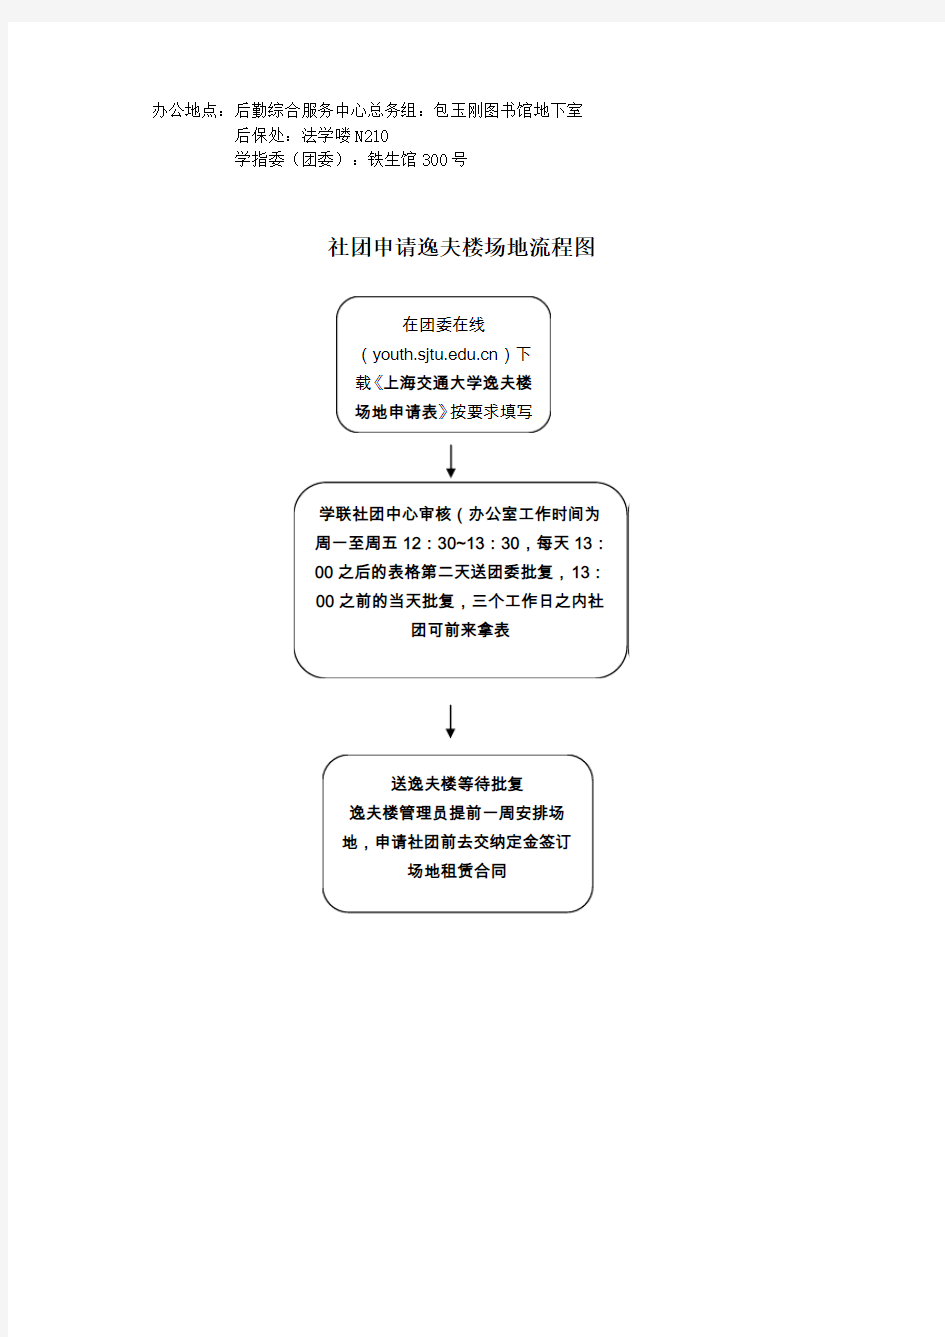 上海交通大学校内学生活动宣传项目社团申请流程图